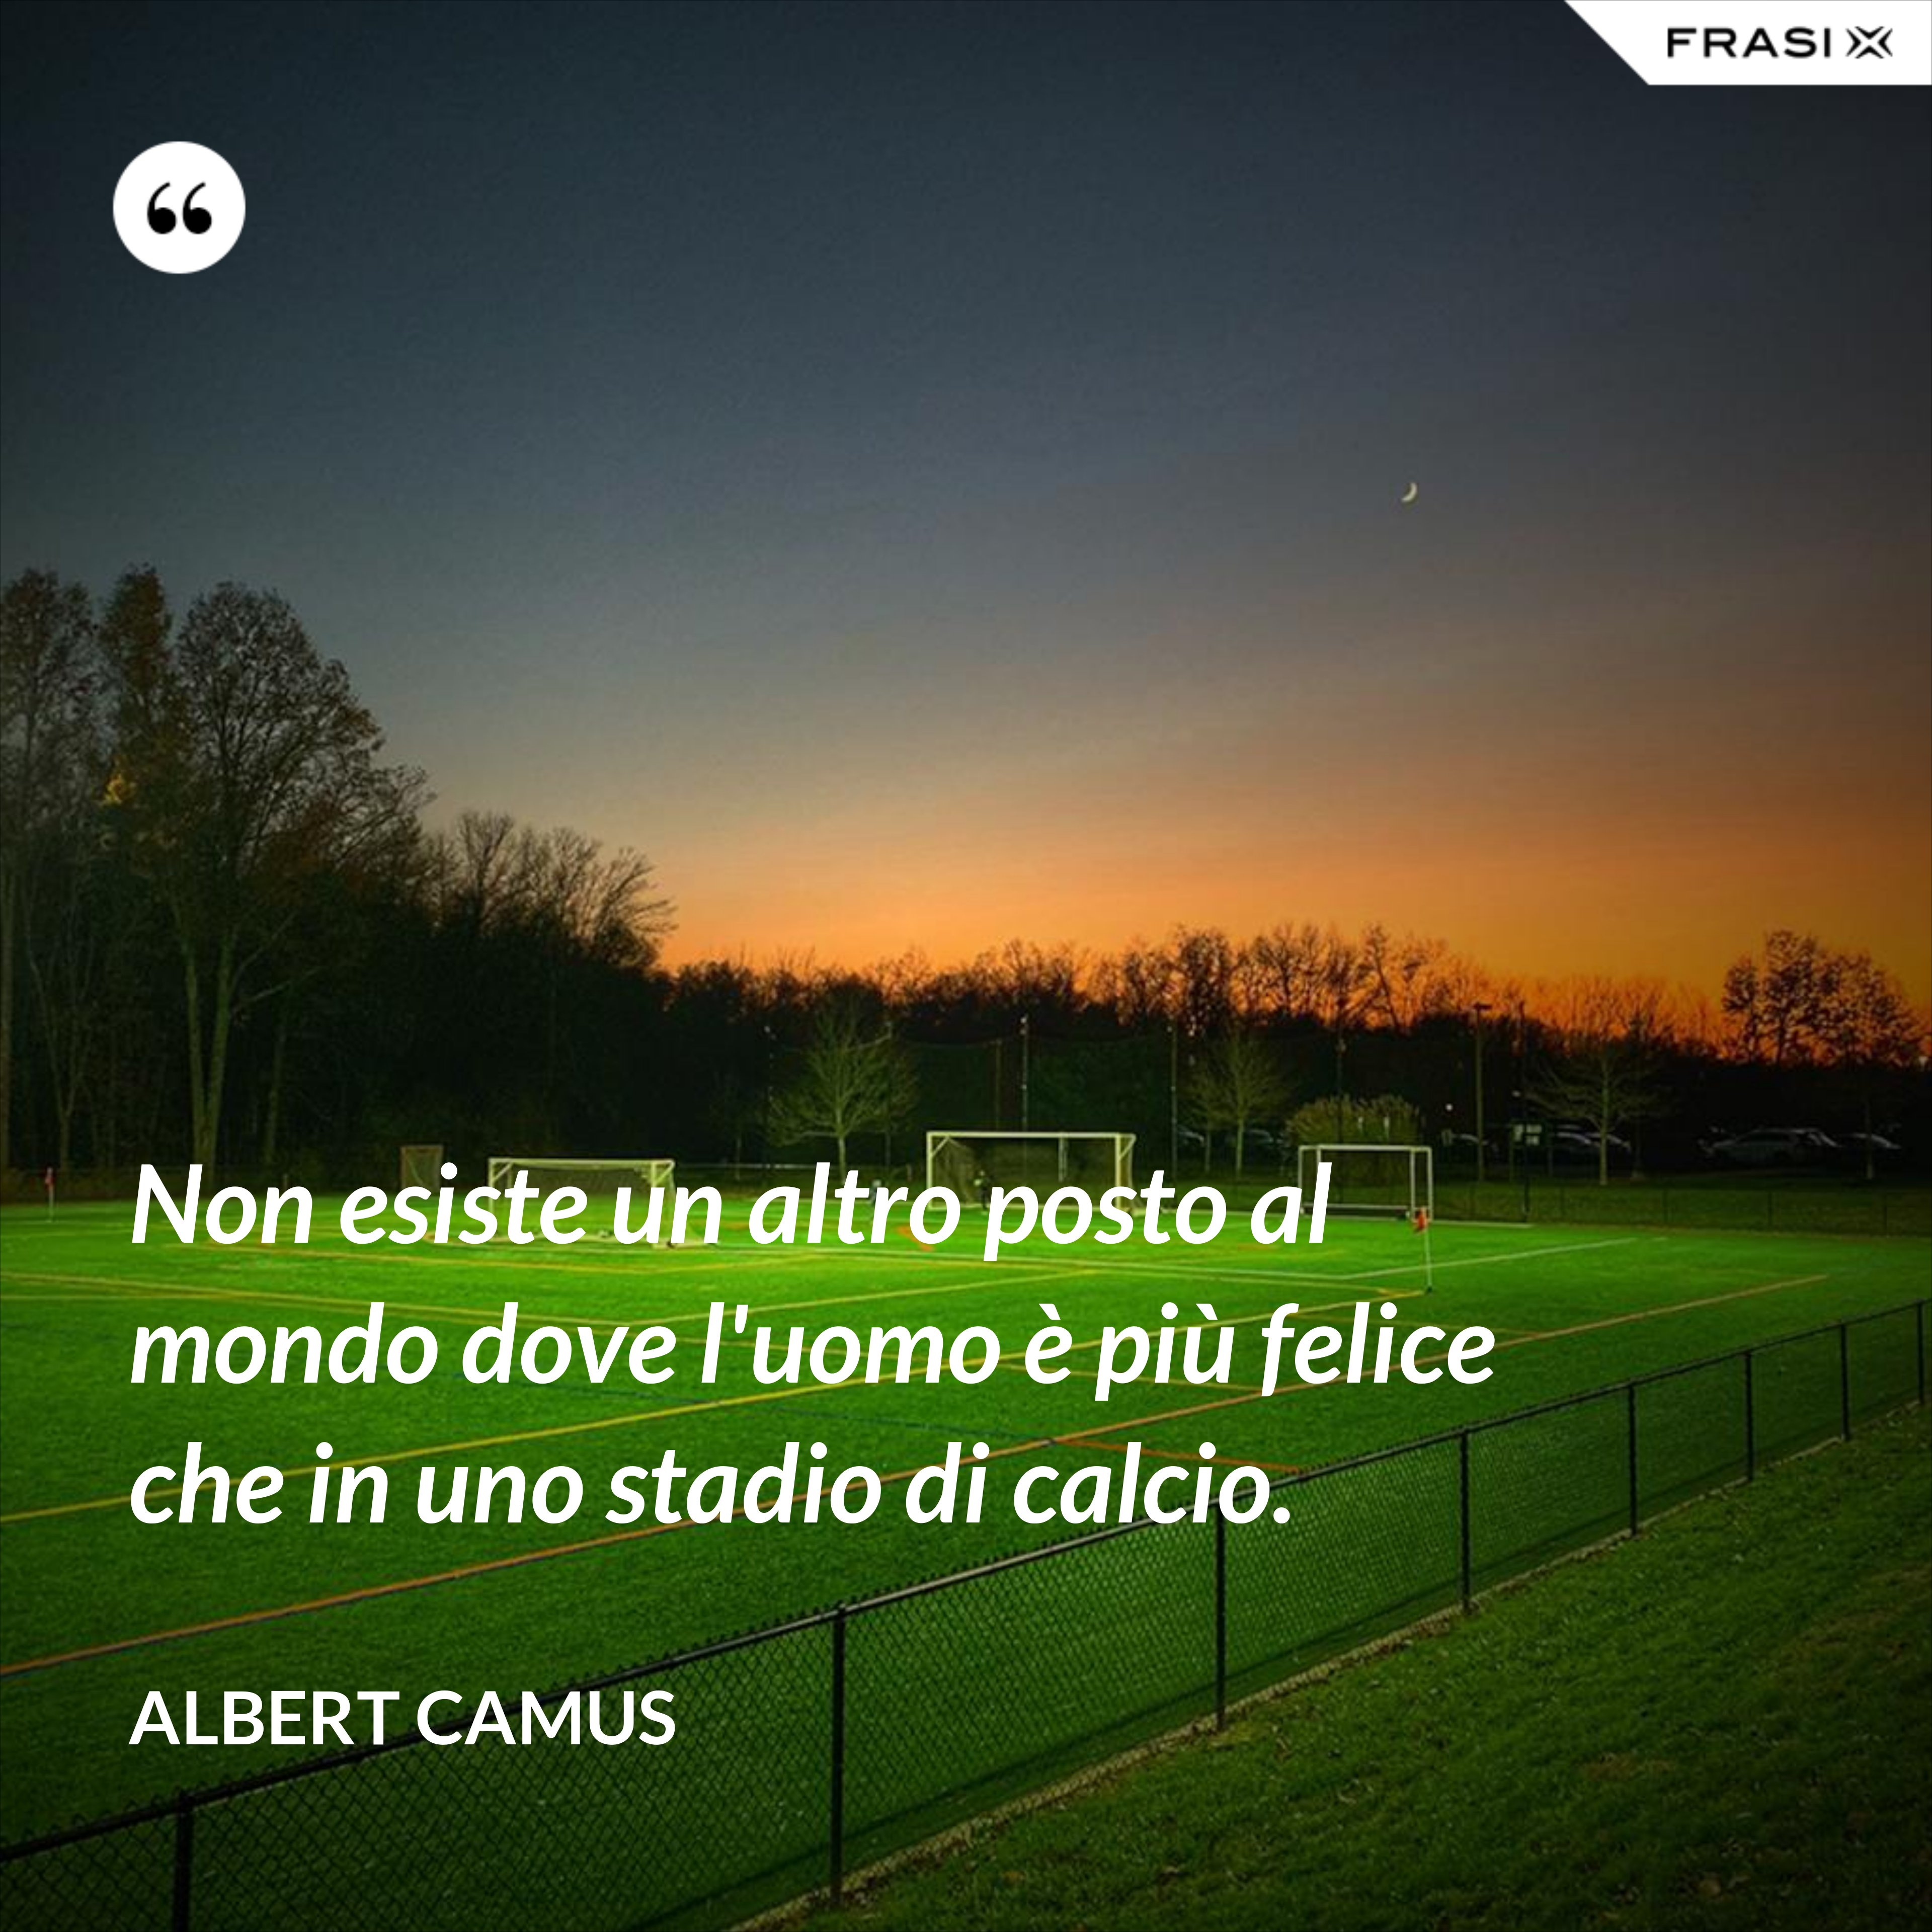 Non esiste un altro posto al mondo dove l'uomo è più felice che in uno stadio di calcio. - Albert Camus